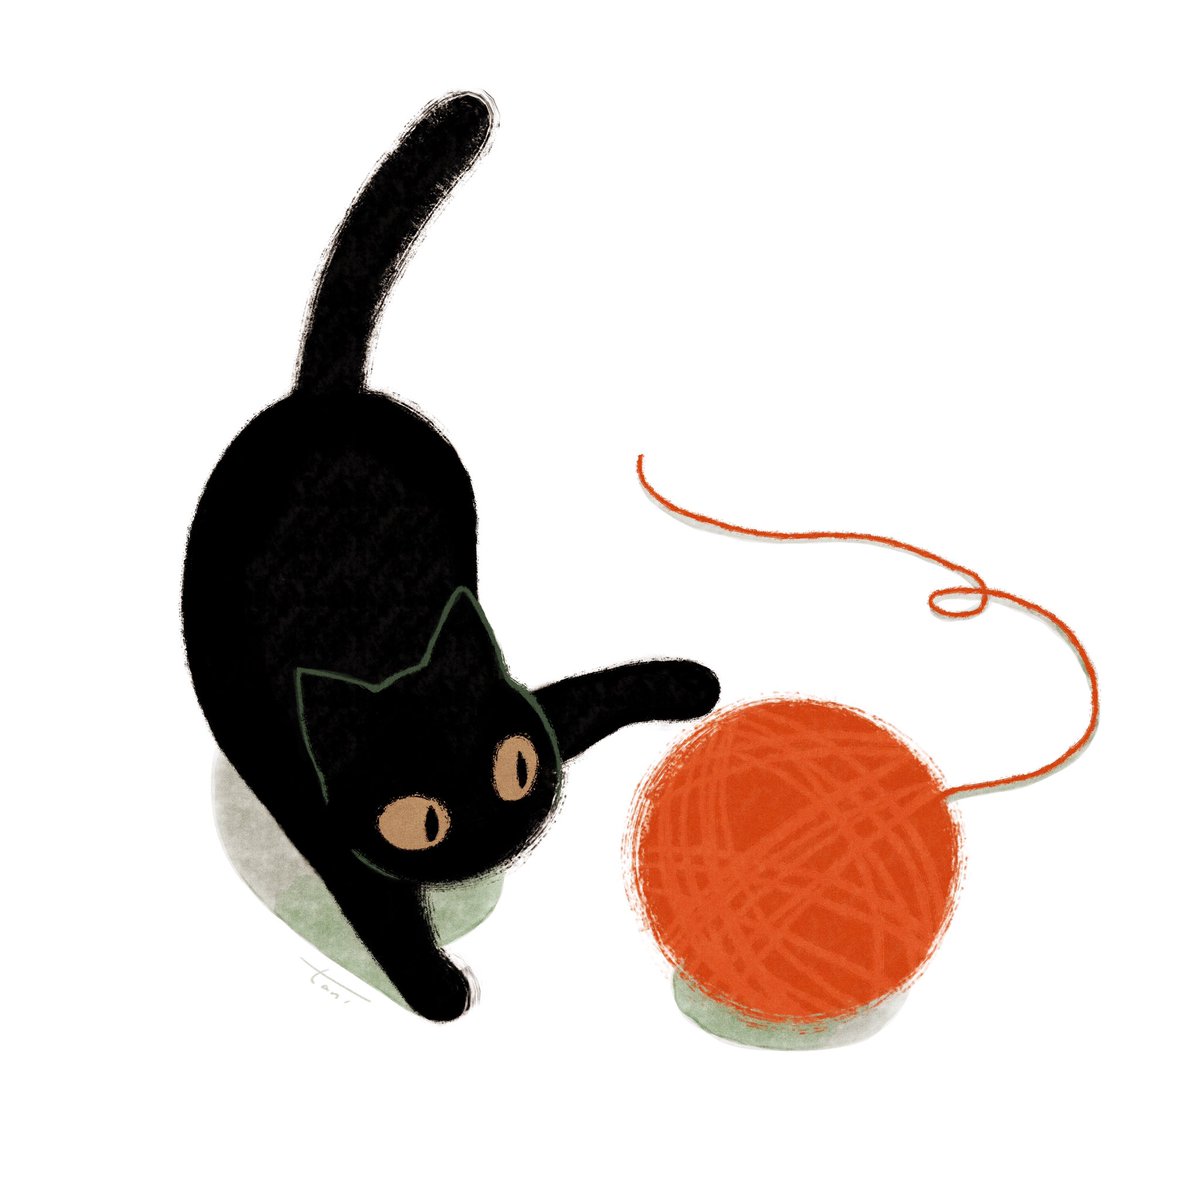 「毛糸とじゃれる猫🧶
#イラスト
#illustration 」|taniのイラスト